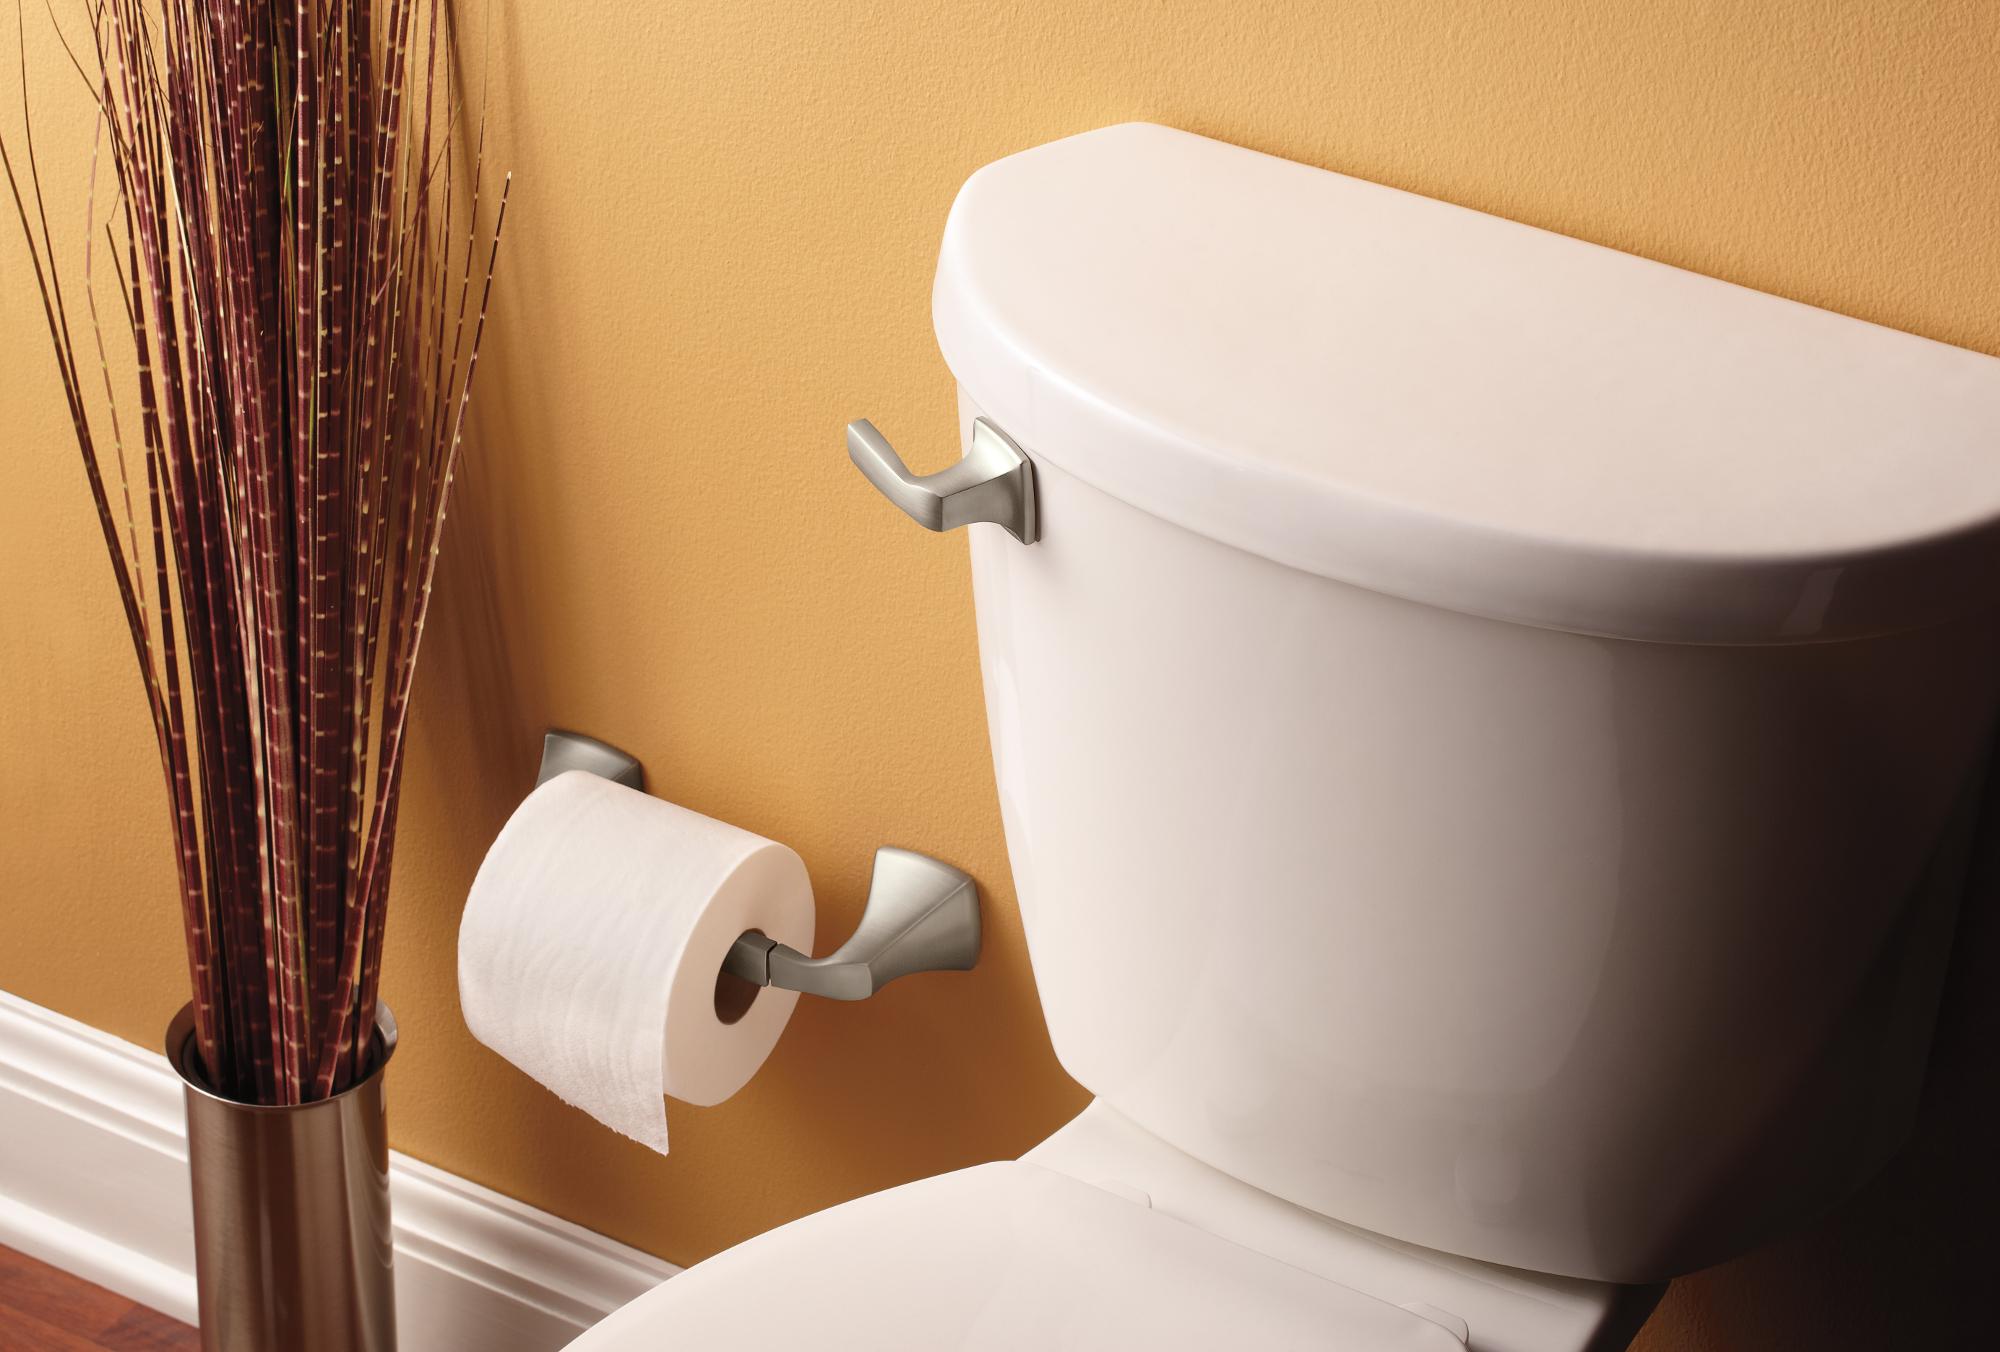 9 Best Moen Toilet Paper Holder for 2023